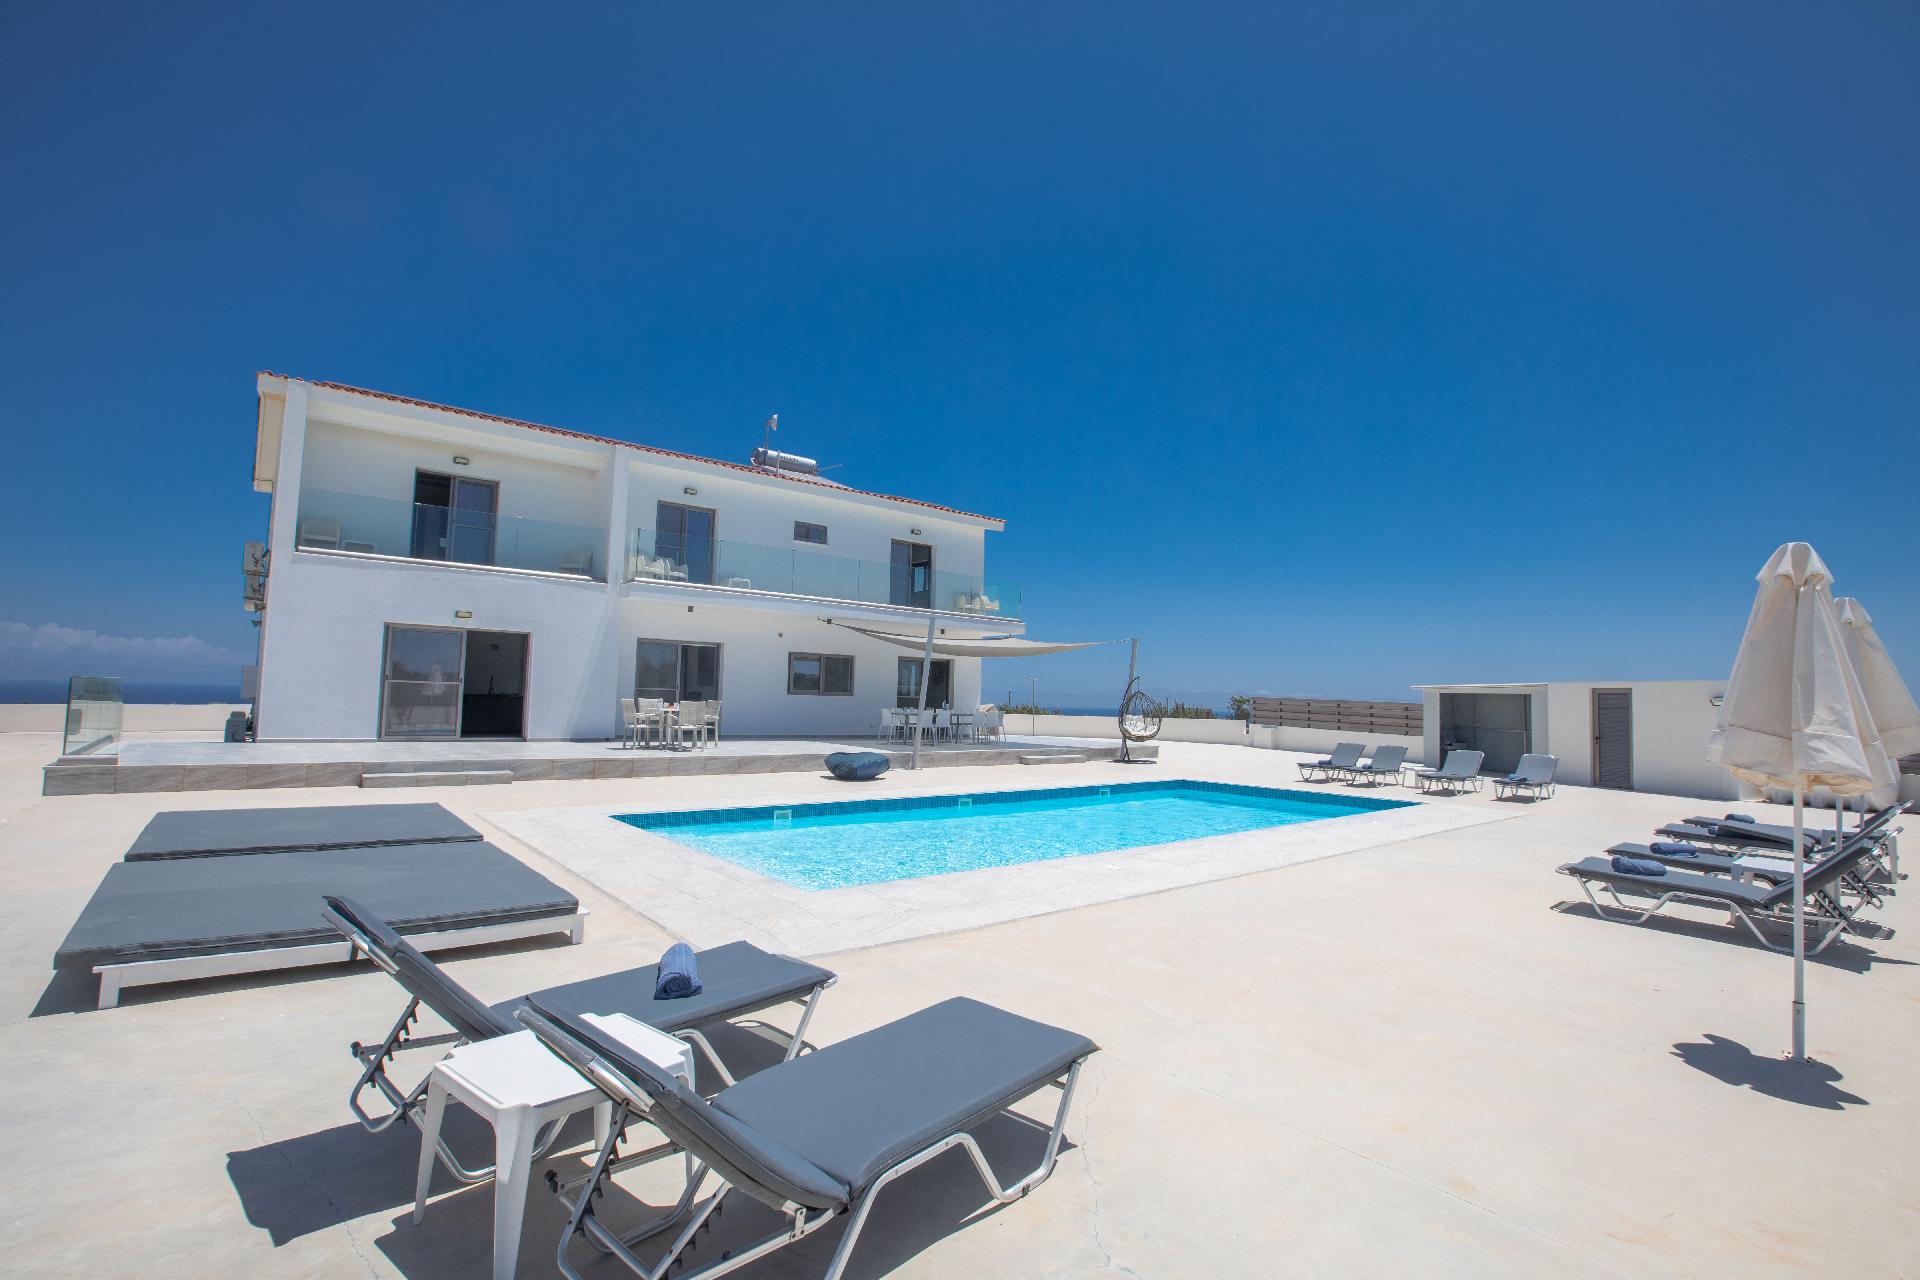 Ferienhaus mit Privatpool für 12 Personen ca. Ferienhaus in Zypern